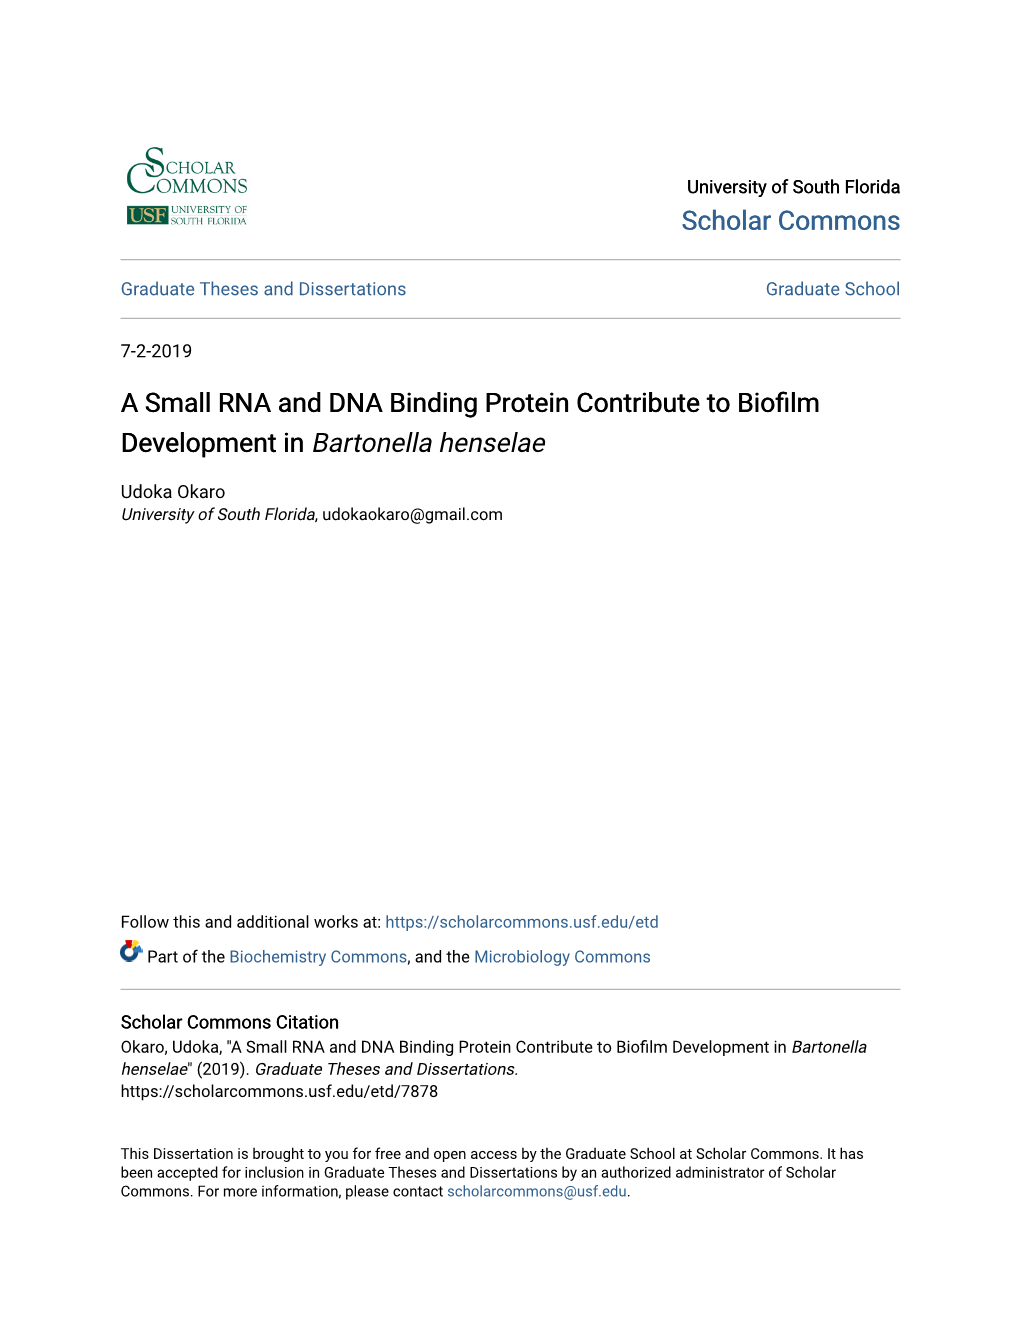 A Small RNA and DNA Binding Protein Contribute to Biofilm Development in Bartonella Henselae